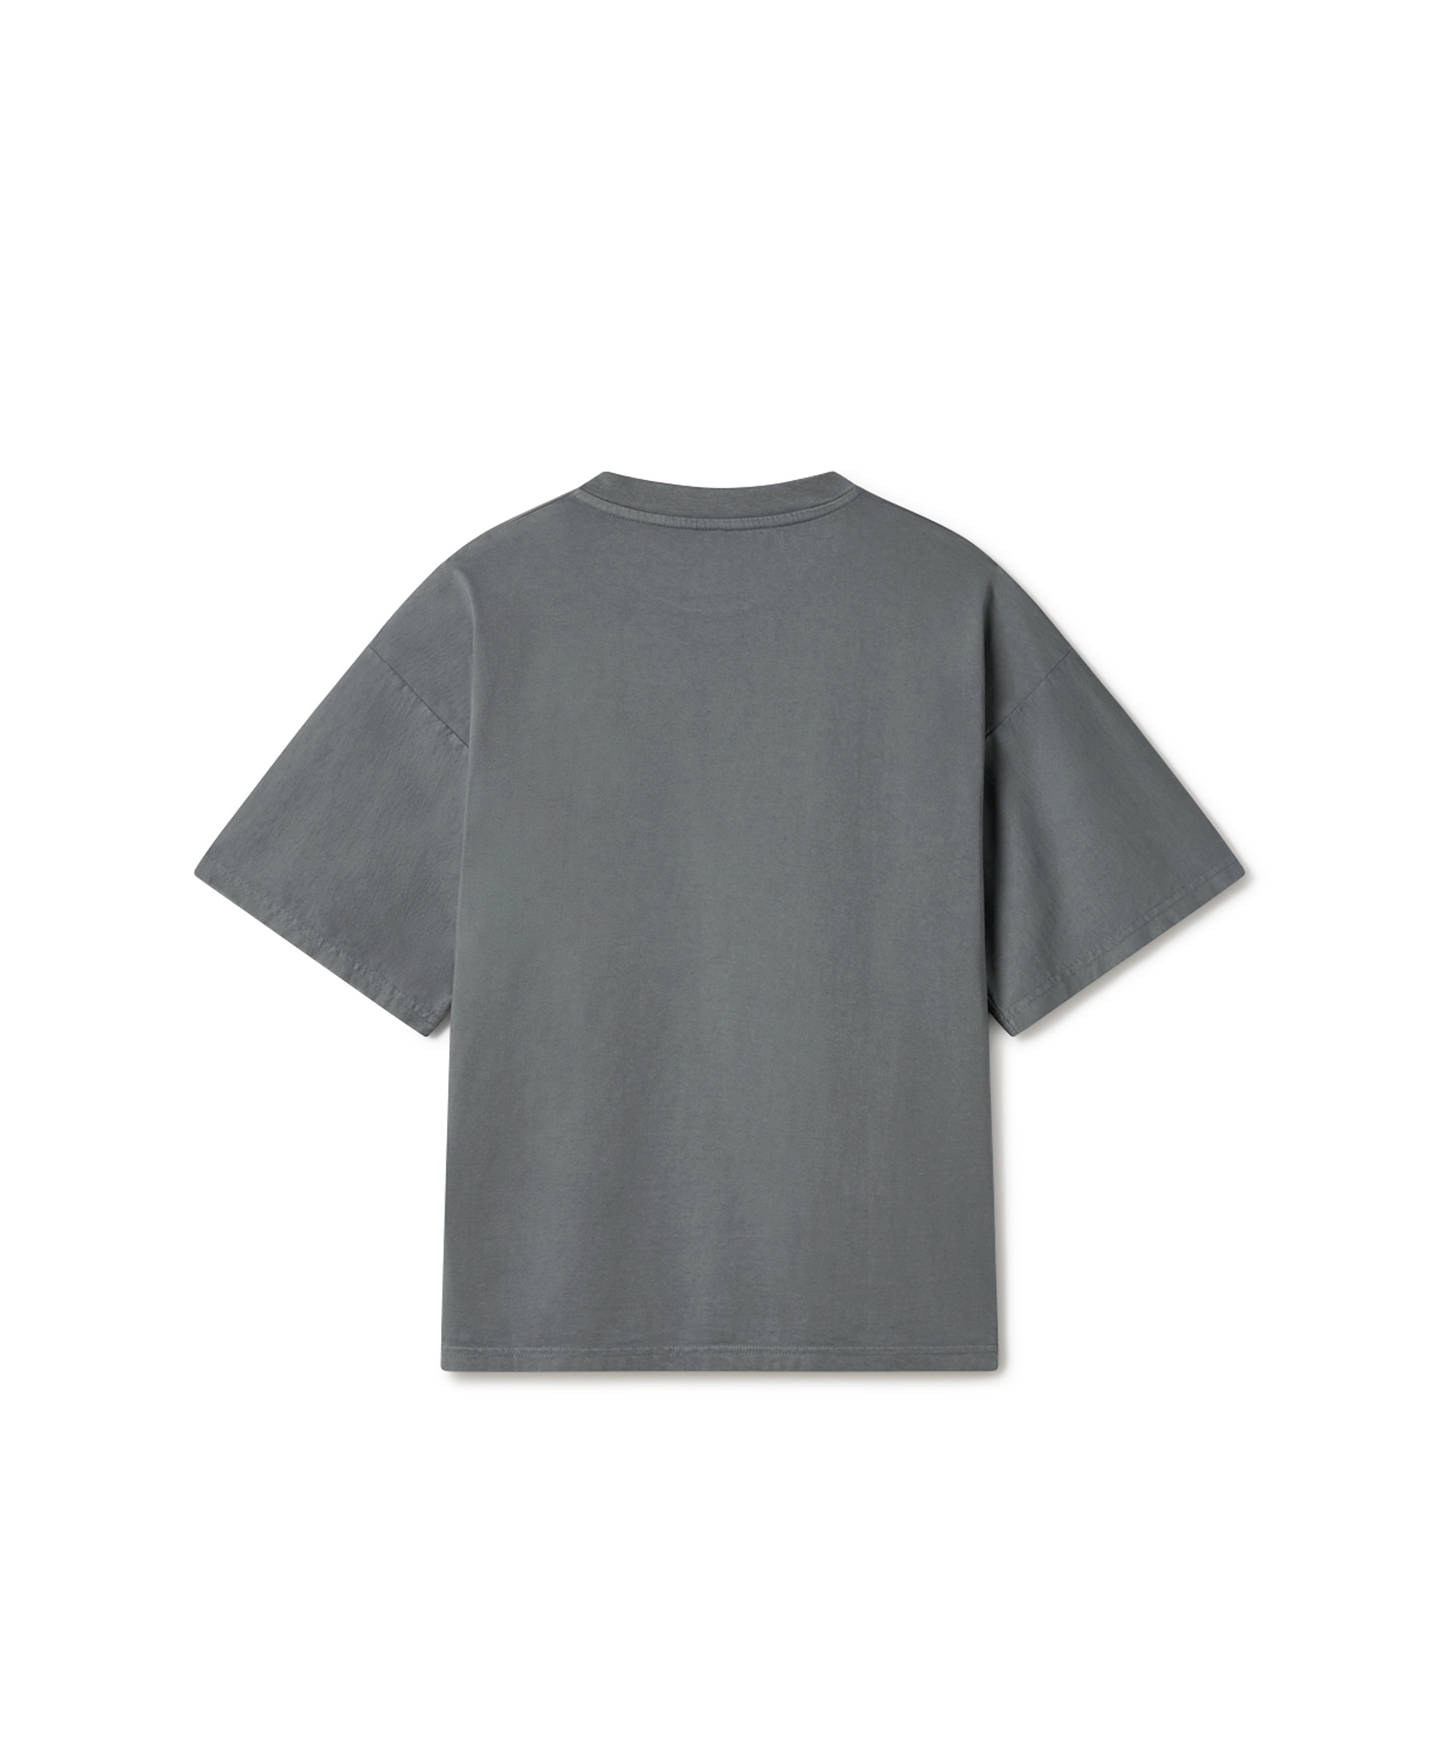 180 GSM 'Iron Gray' T-Shirt